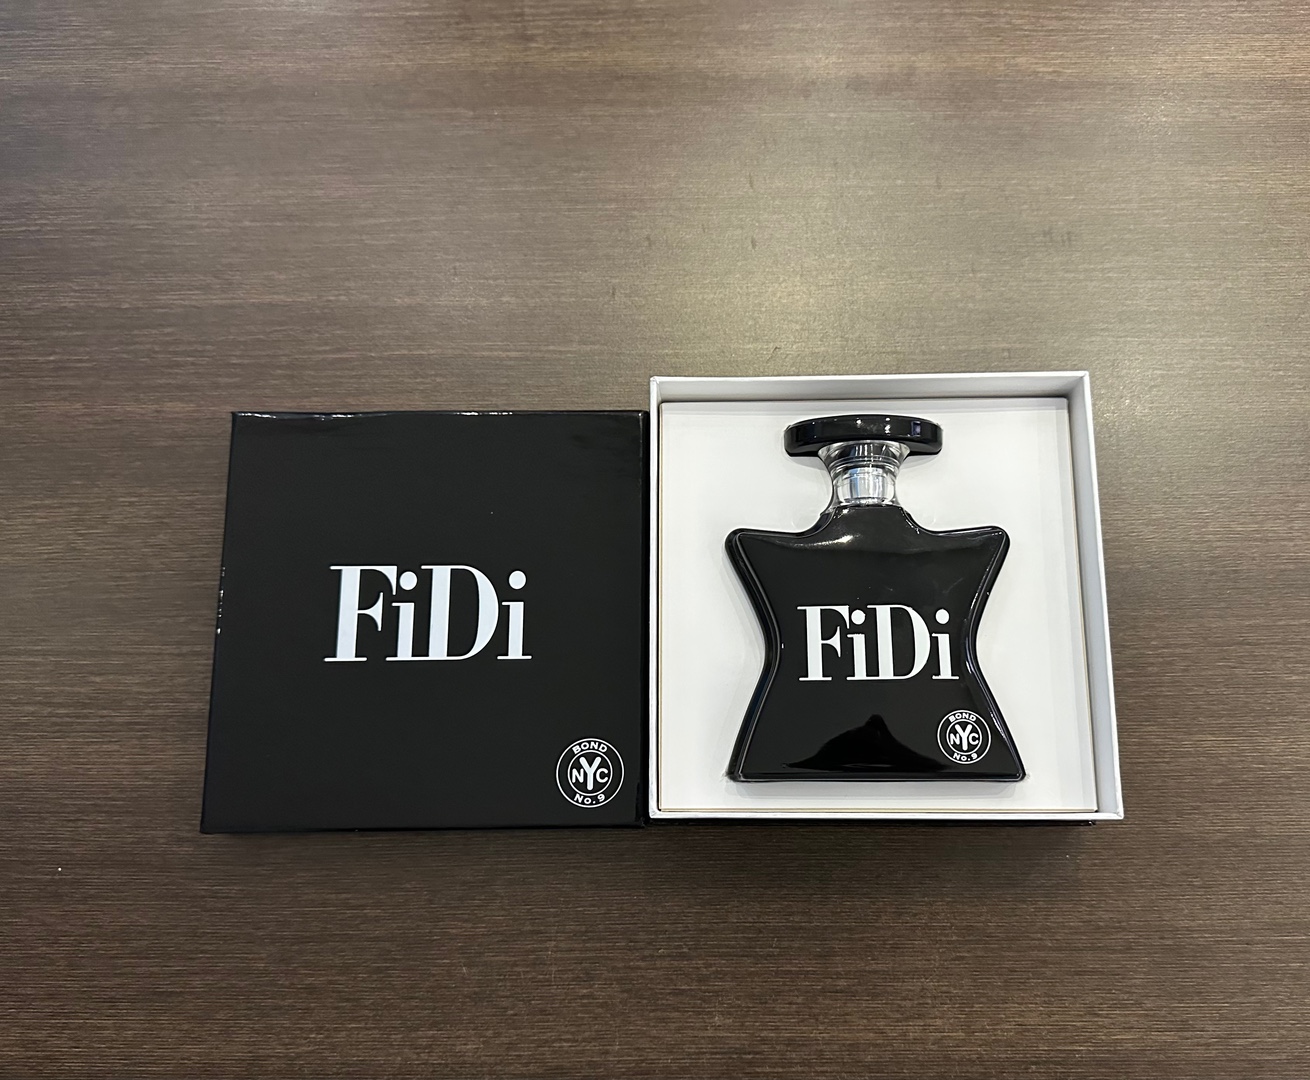 joyas, relojes y accesorios - Perfume FiDi Bond NO.9 NYC Nuevo 100% Original RD$ 15,900 NEG